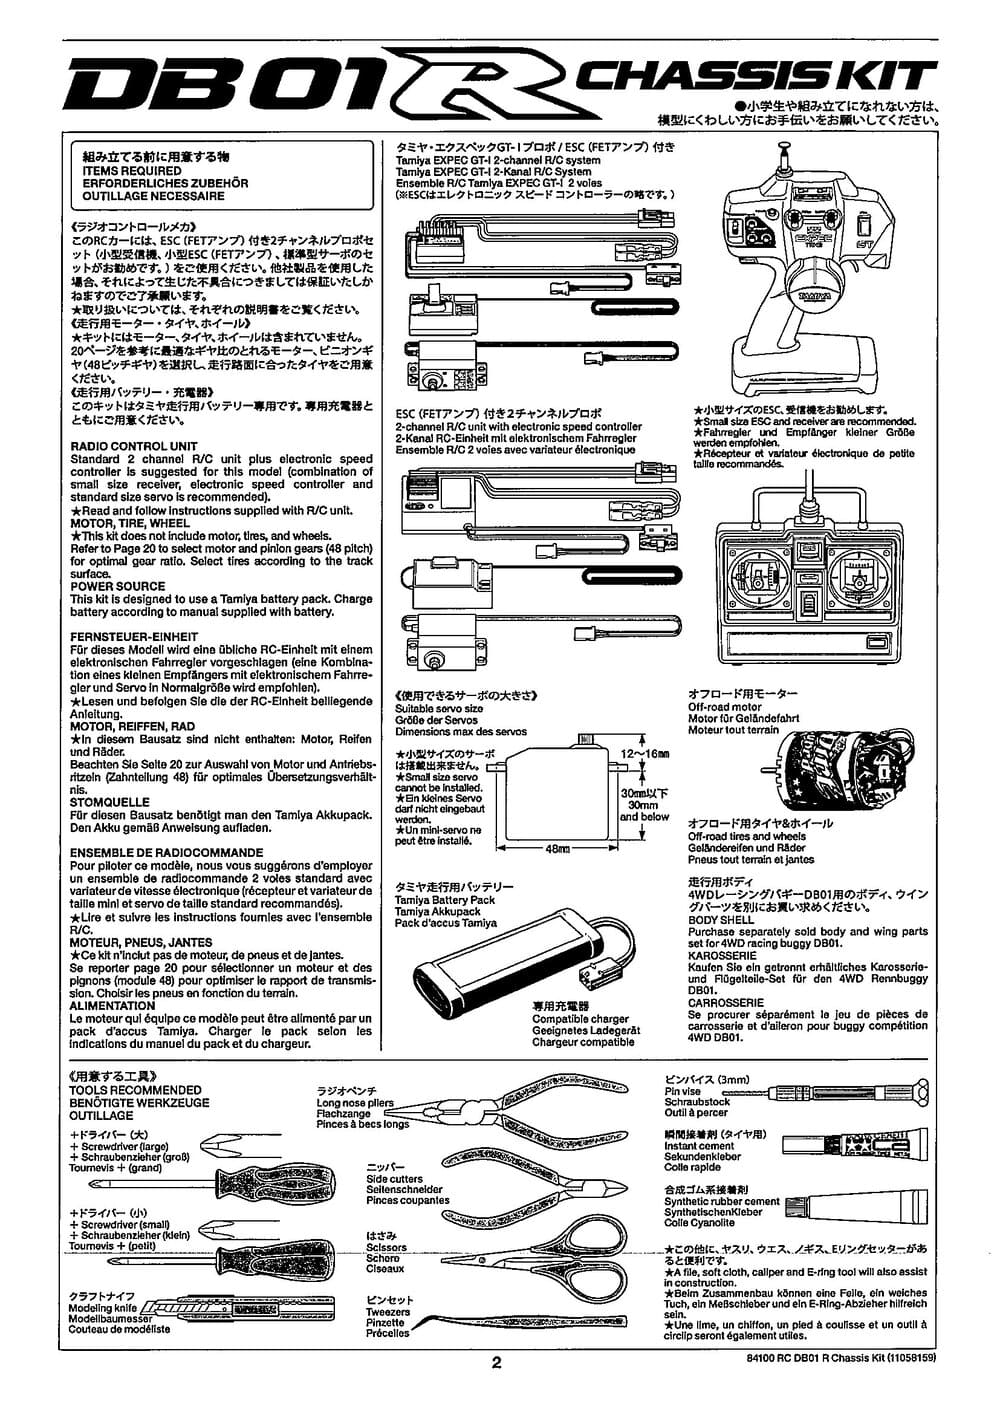 Tamiya - DB-01R Chassis - Manual - Page 2